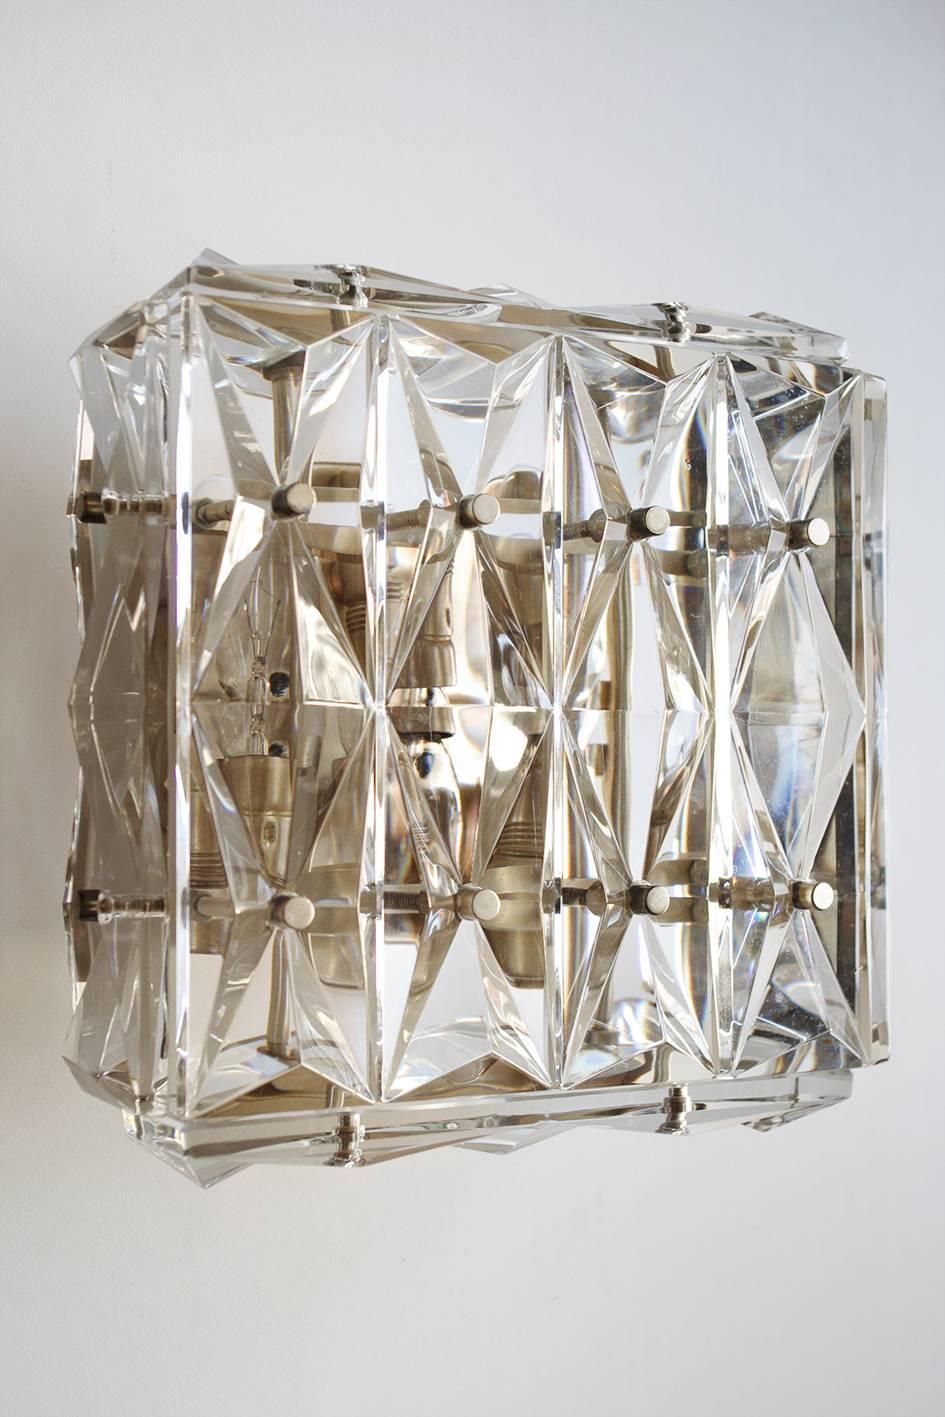 Ein Paar wunderschöner Kristallglas-Wand- oder Deckenhalterungen.
Österreich, 1960er Jahre

